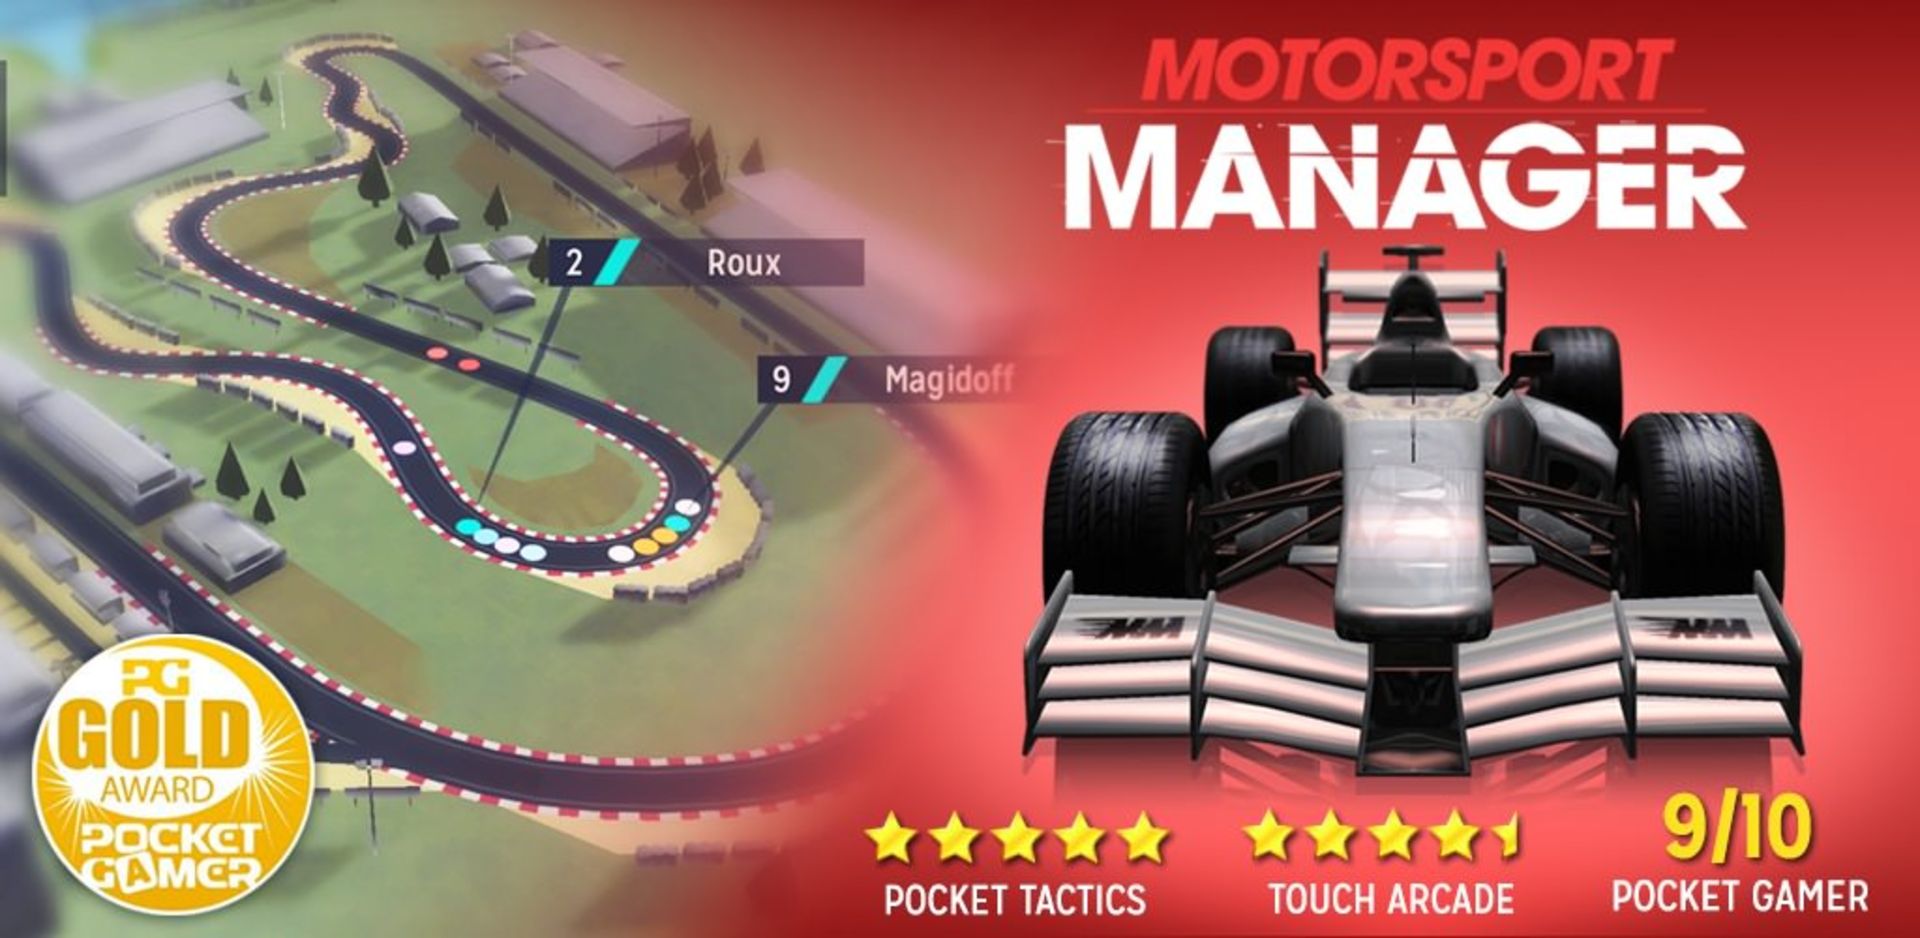 motorsport-manager